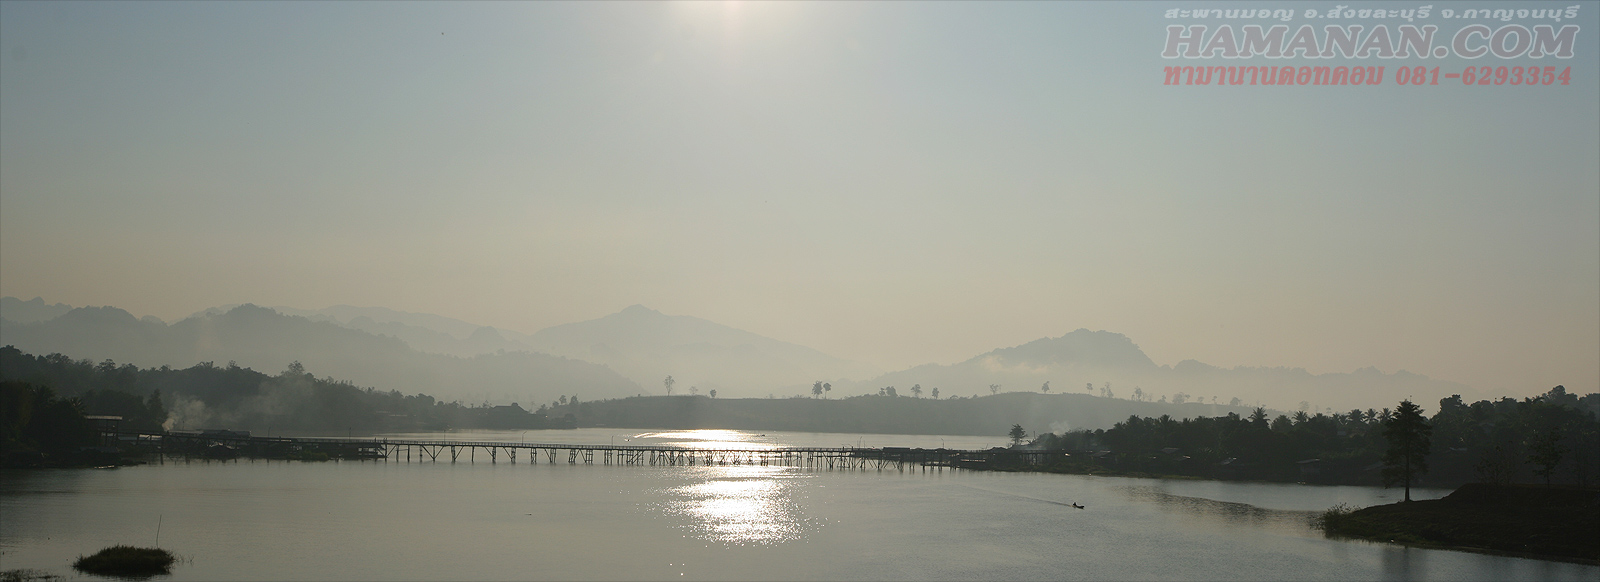 สะพานมอญยามเช้า อำเภอสังขละบุรี จังหวัดกาญจนบุรี